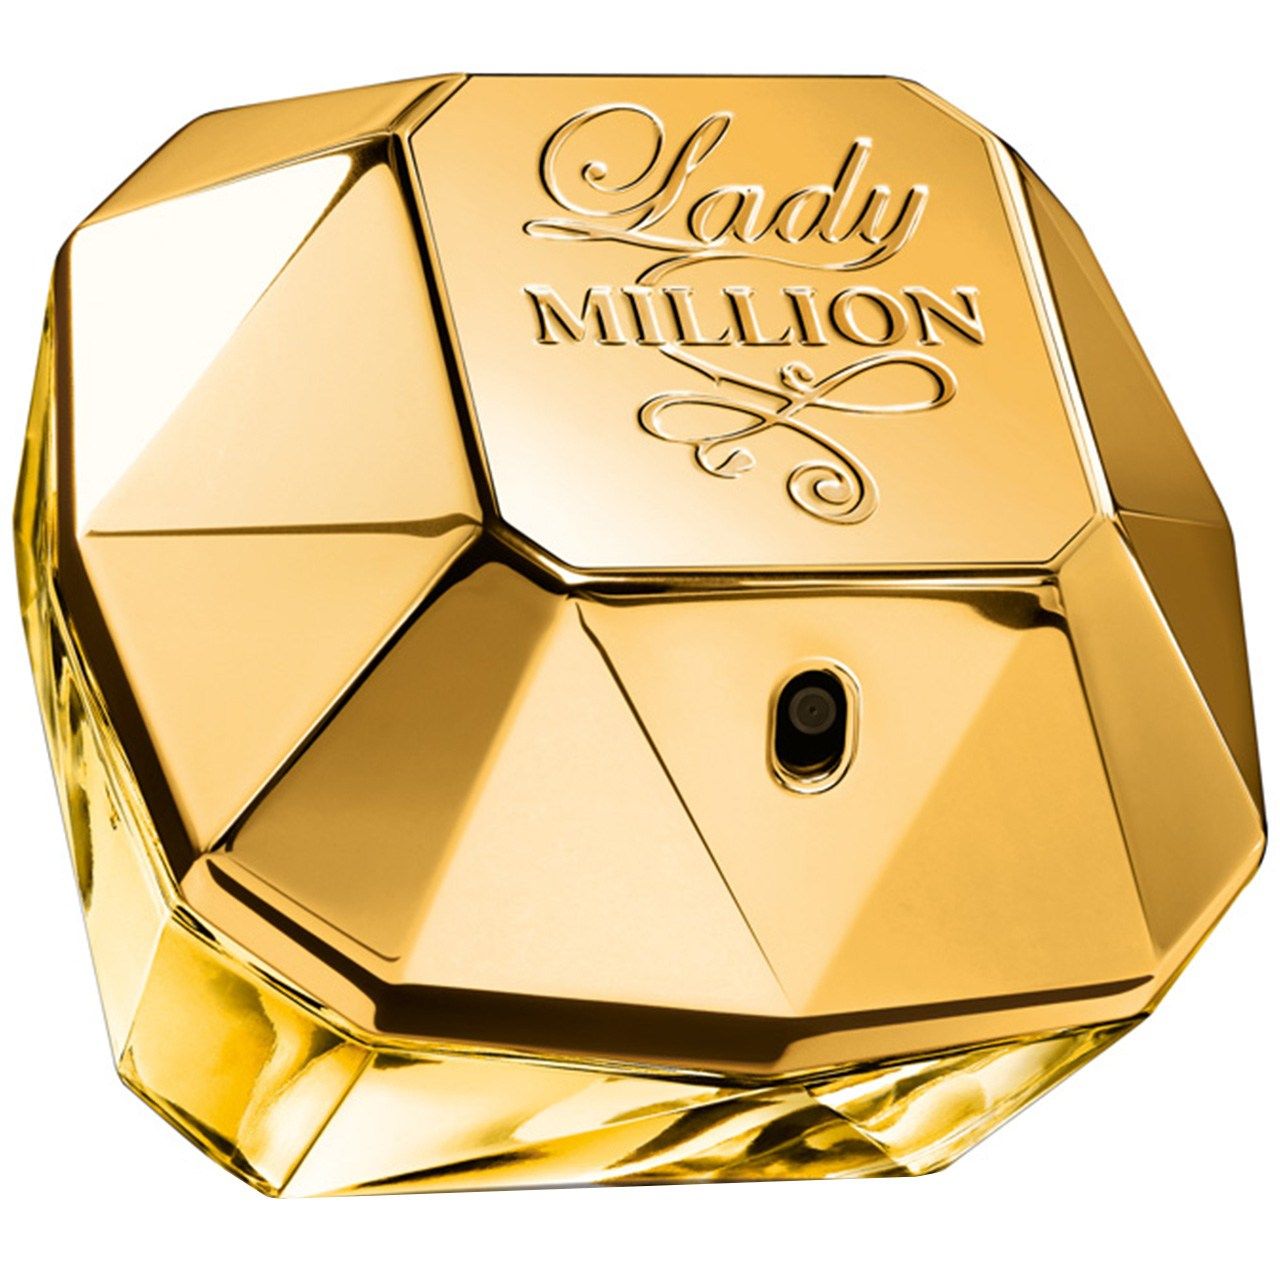 ادو پرفیوم زنانه پاکو رابان مدل Lady Million حجم 50 میلی لیتر -  - 1